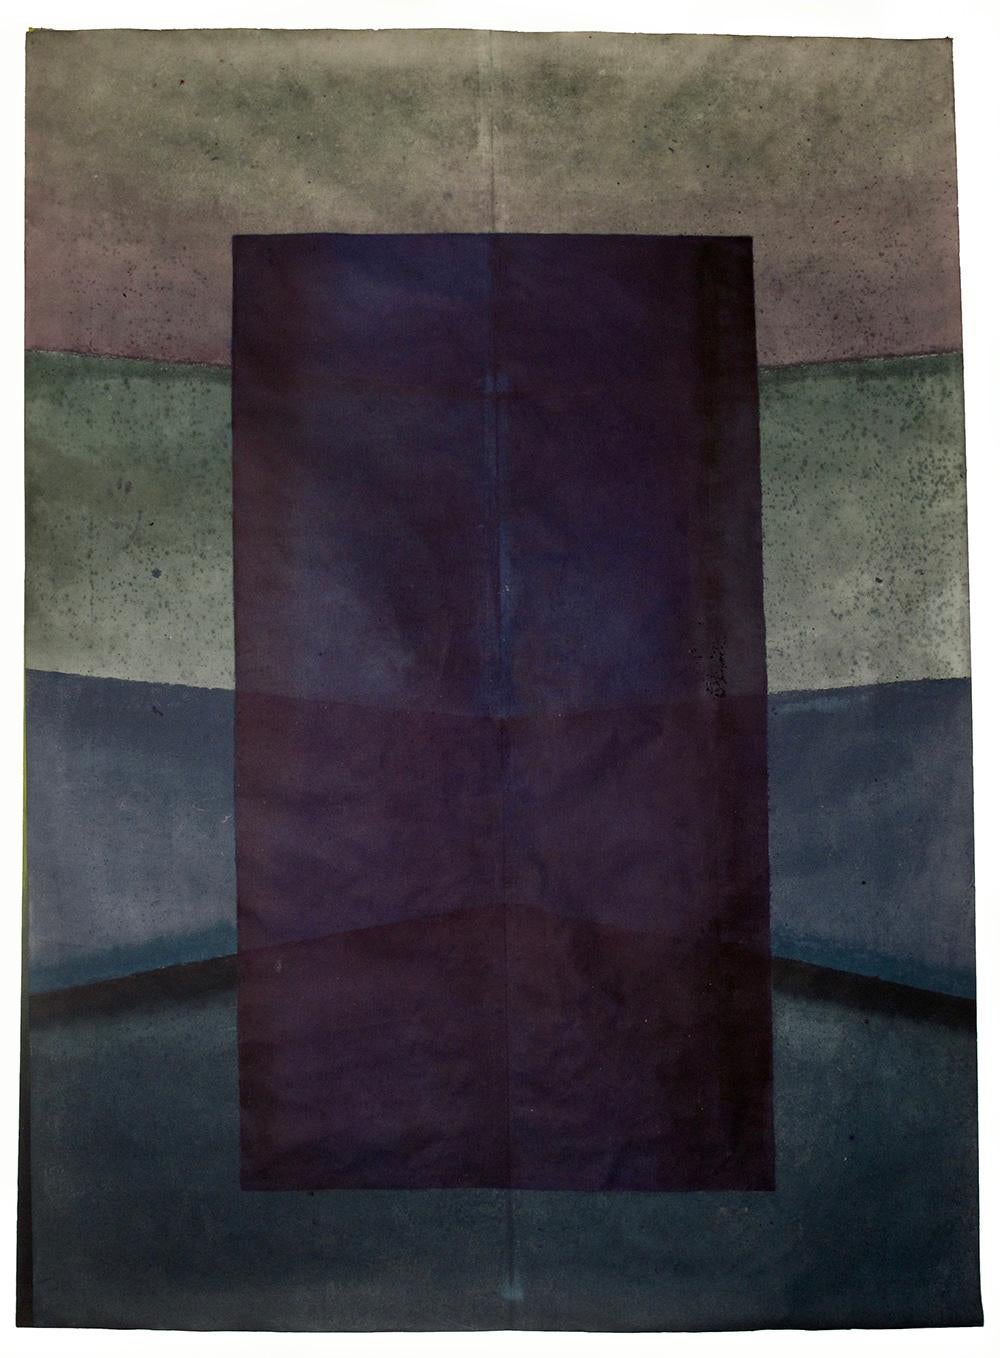 Elvire Ferle Abstract Painting – Ohne Titel XLIII von Ferle – abstraktes Gemälde in Großformat, dunkle Töne